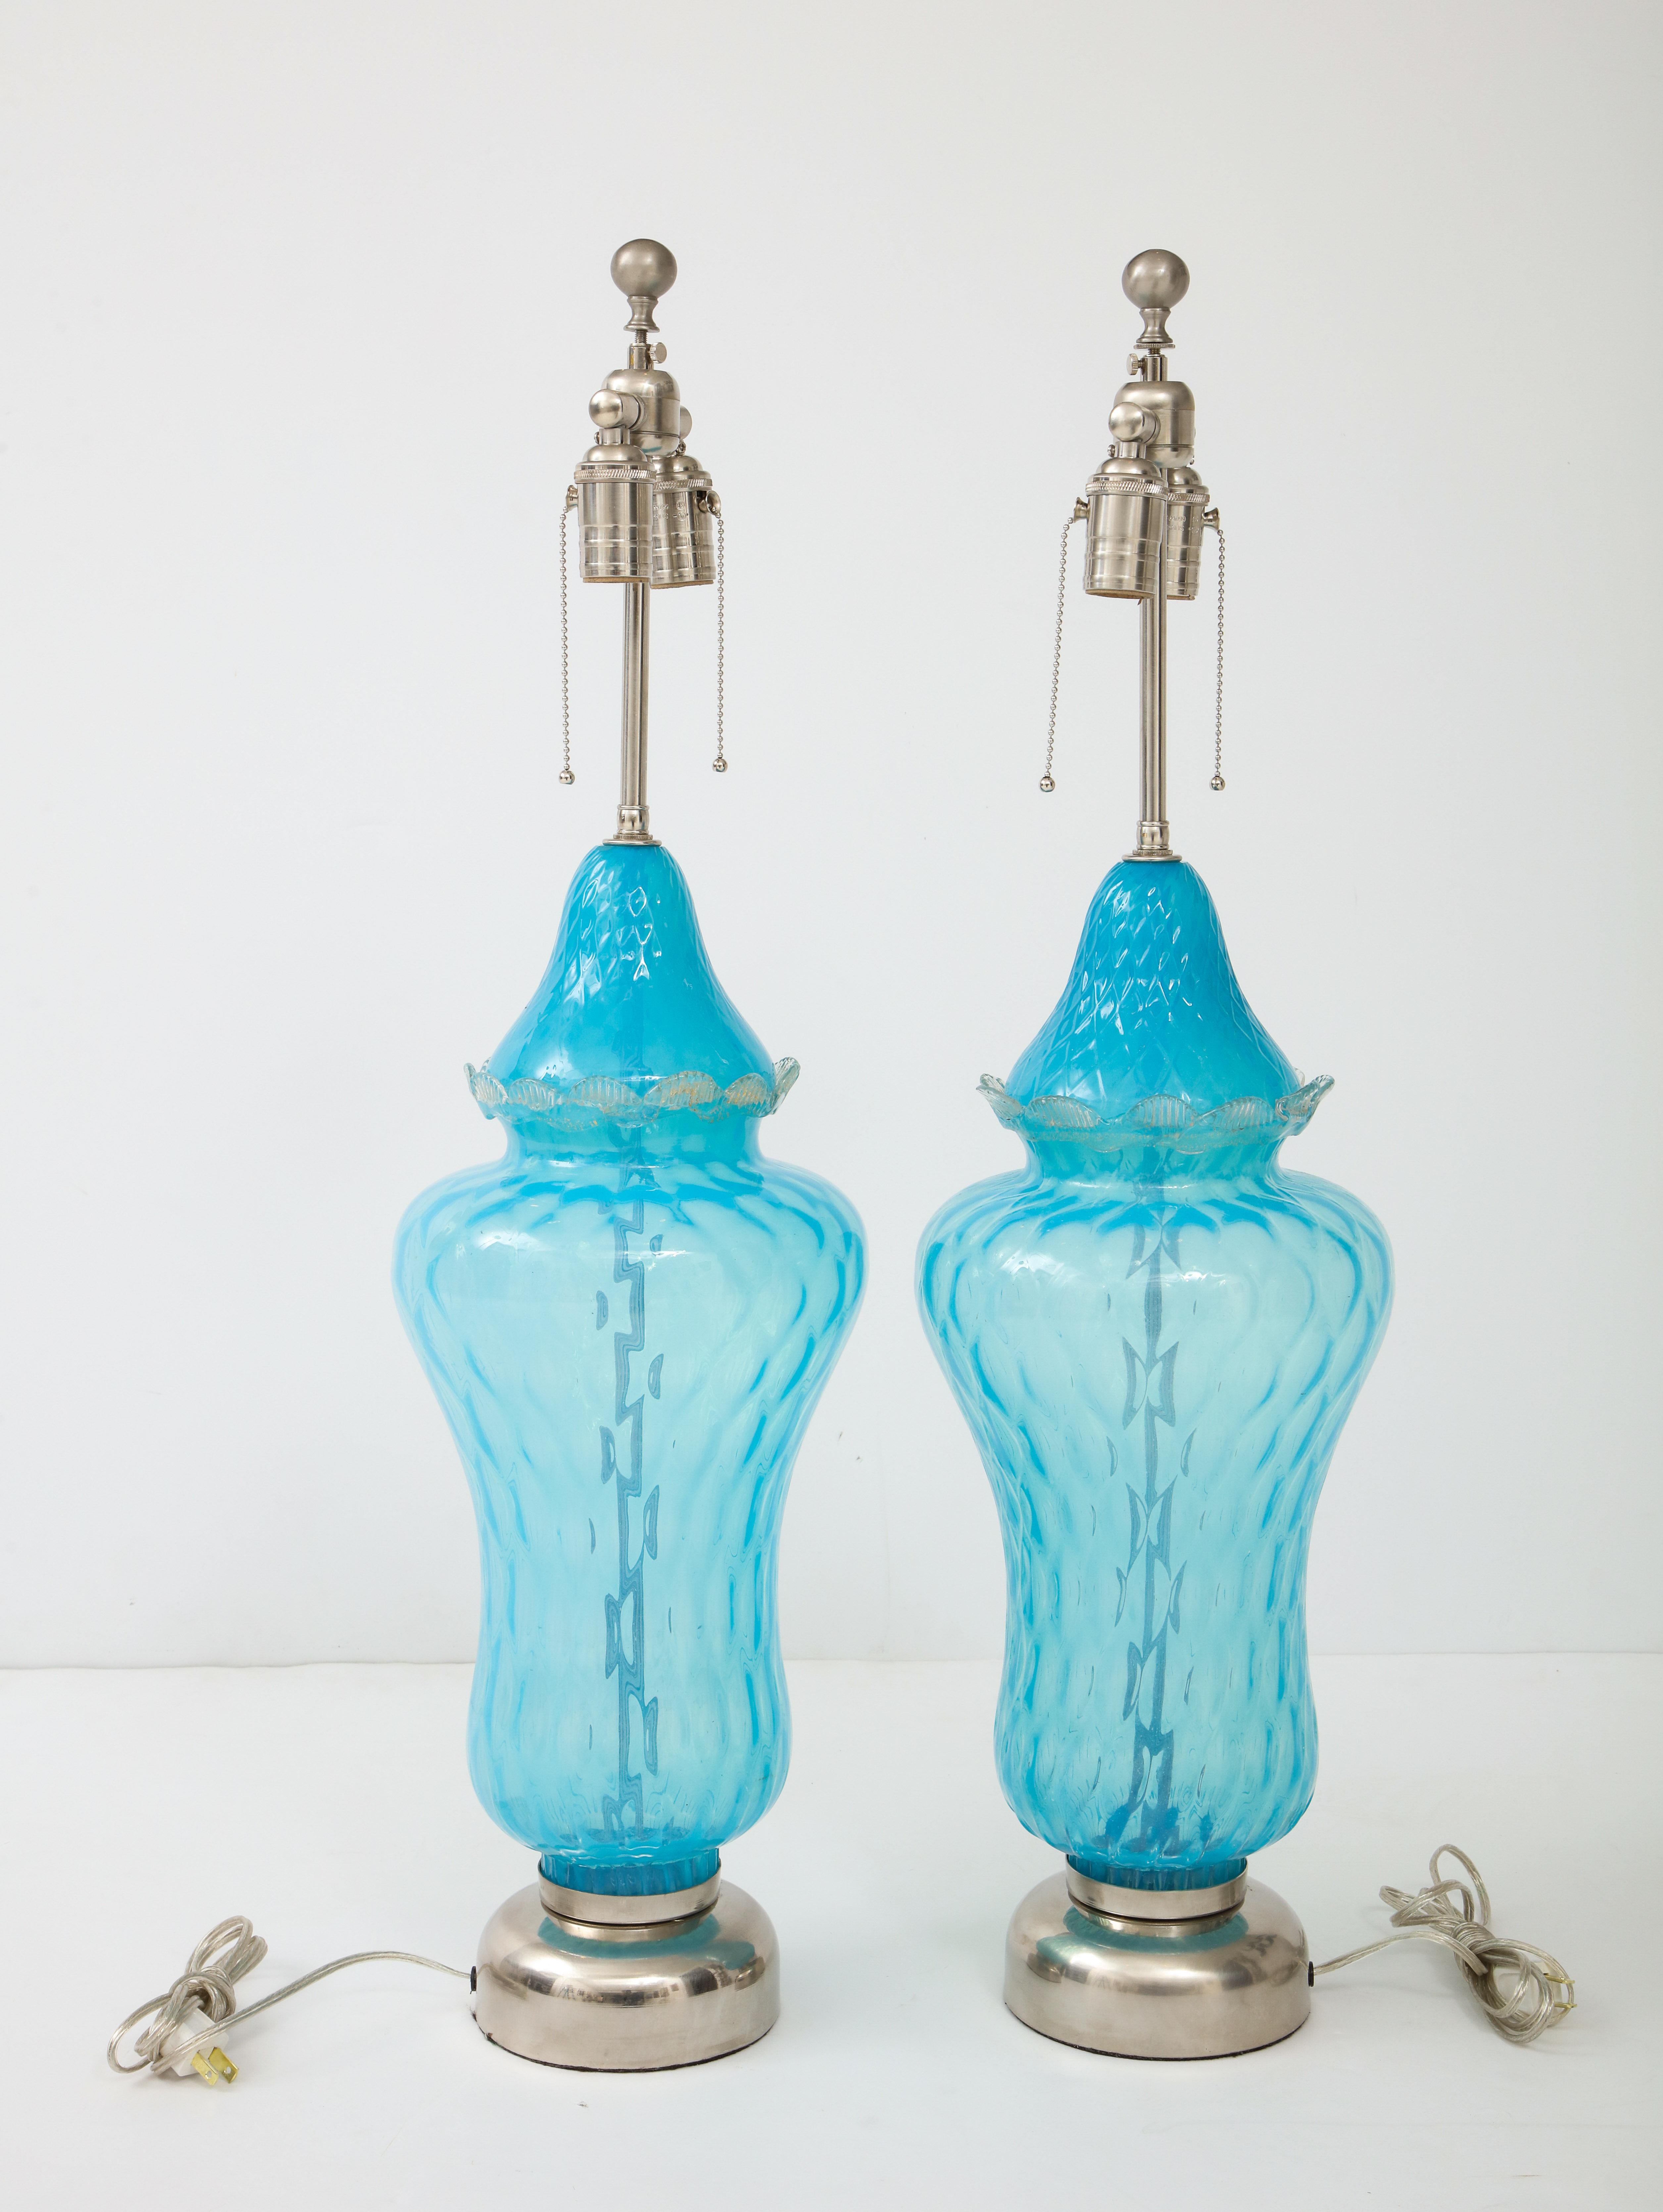 Paire de lampes en verre de Murano bleu ciel translucide avec un léger motif de losanges piqués sur toute la surface et un bord en verre appliqué. Les lampes reposent sur des socles en nickel mat et ont été recâblées pour être utilisées aux